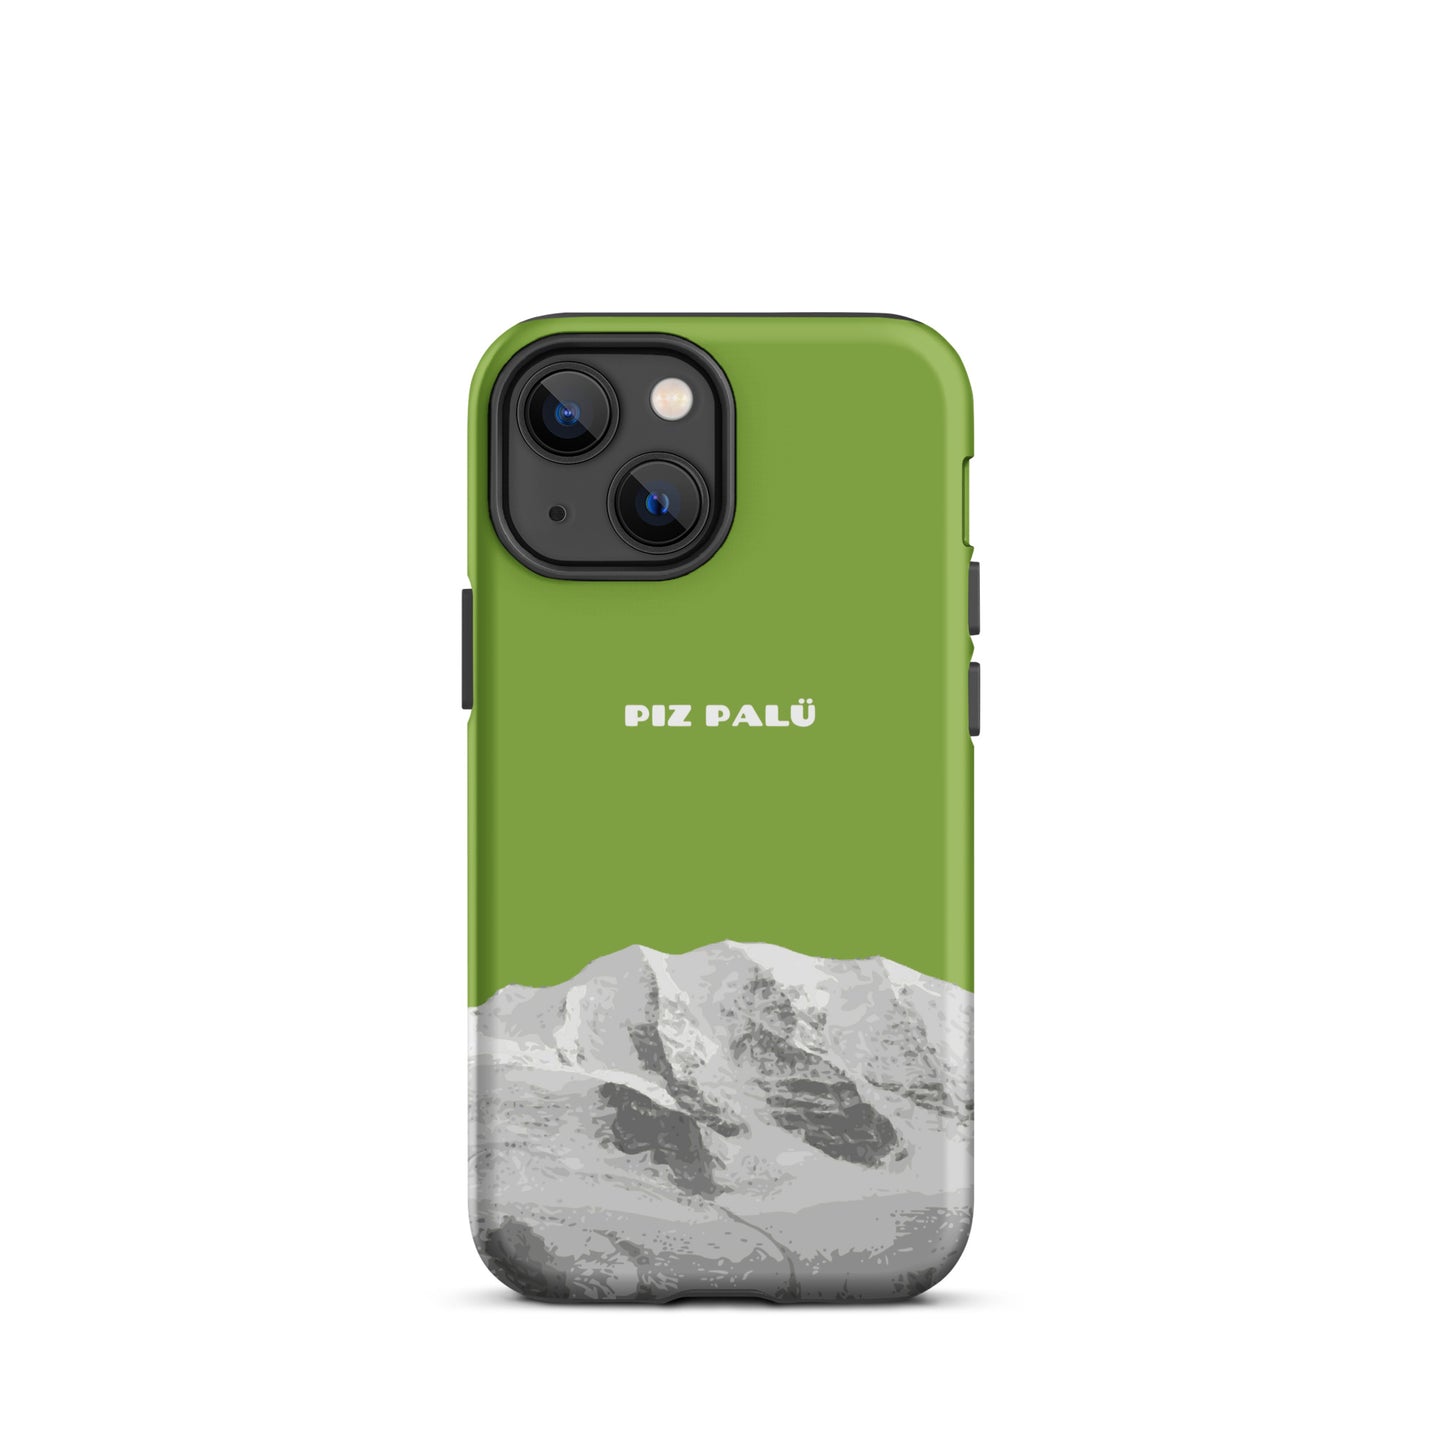 Hülle für das iPhone 13 mini von Apple in der Farbe Gelbgrün, dass den Piz Palü in Graubünden zeigt. 